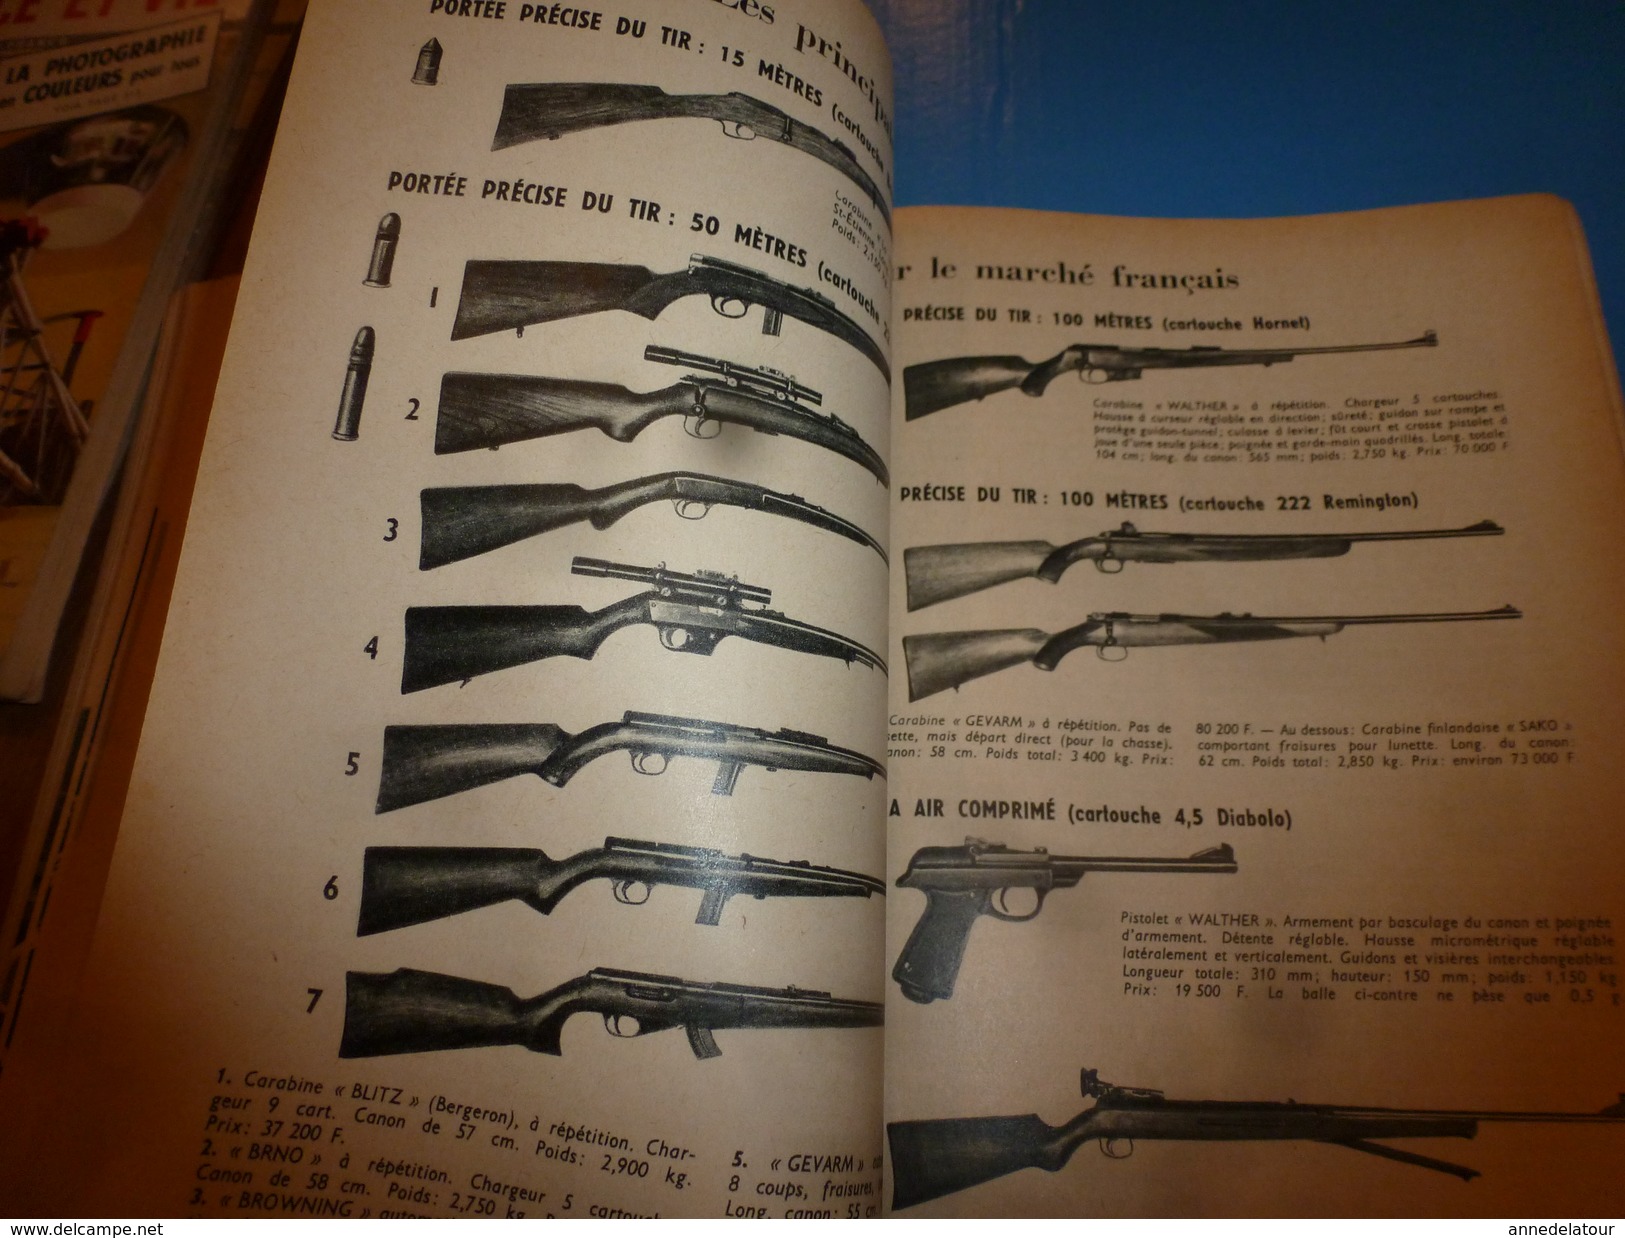 1958 SCIENCE Et VIE  N° 495--->Les Bouffonneries De Bufeo; SAHARA , De L'eau , De L'eau; Le 22 Long Rifle ; Etc - Science